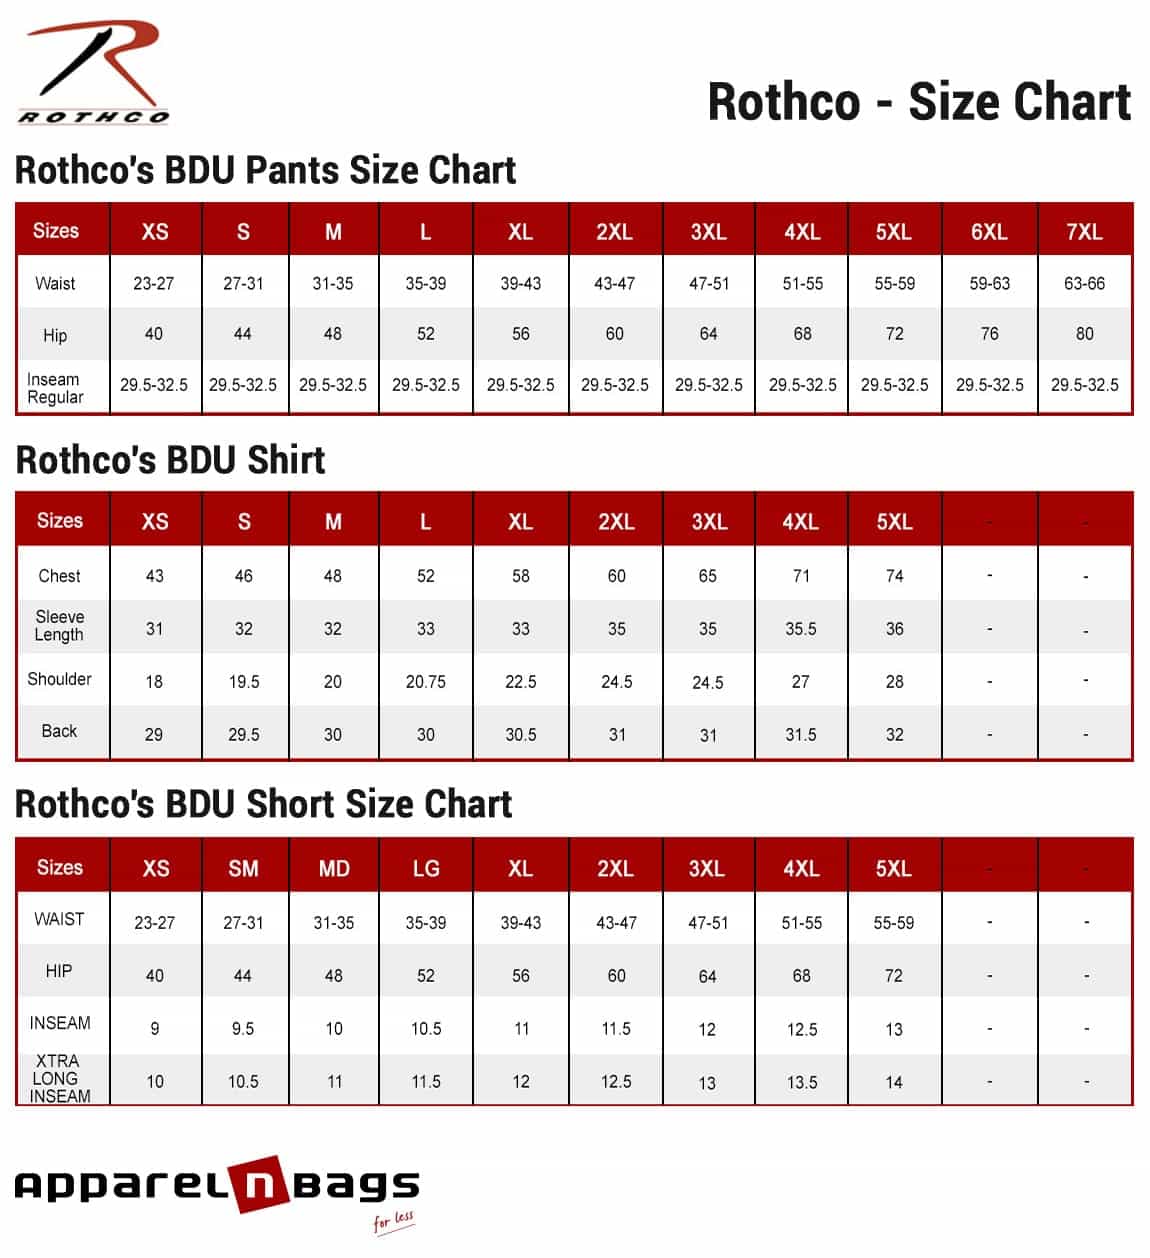 Rothco - Size Chart